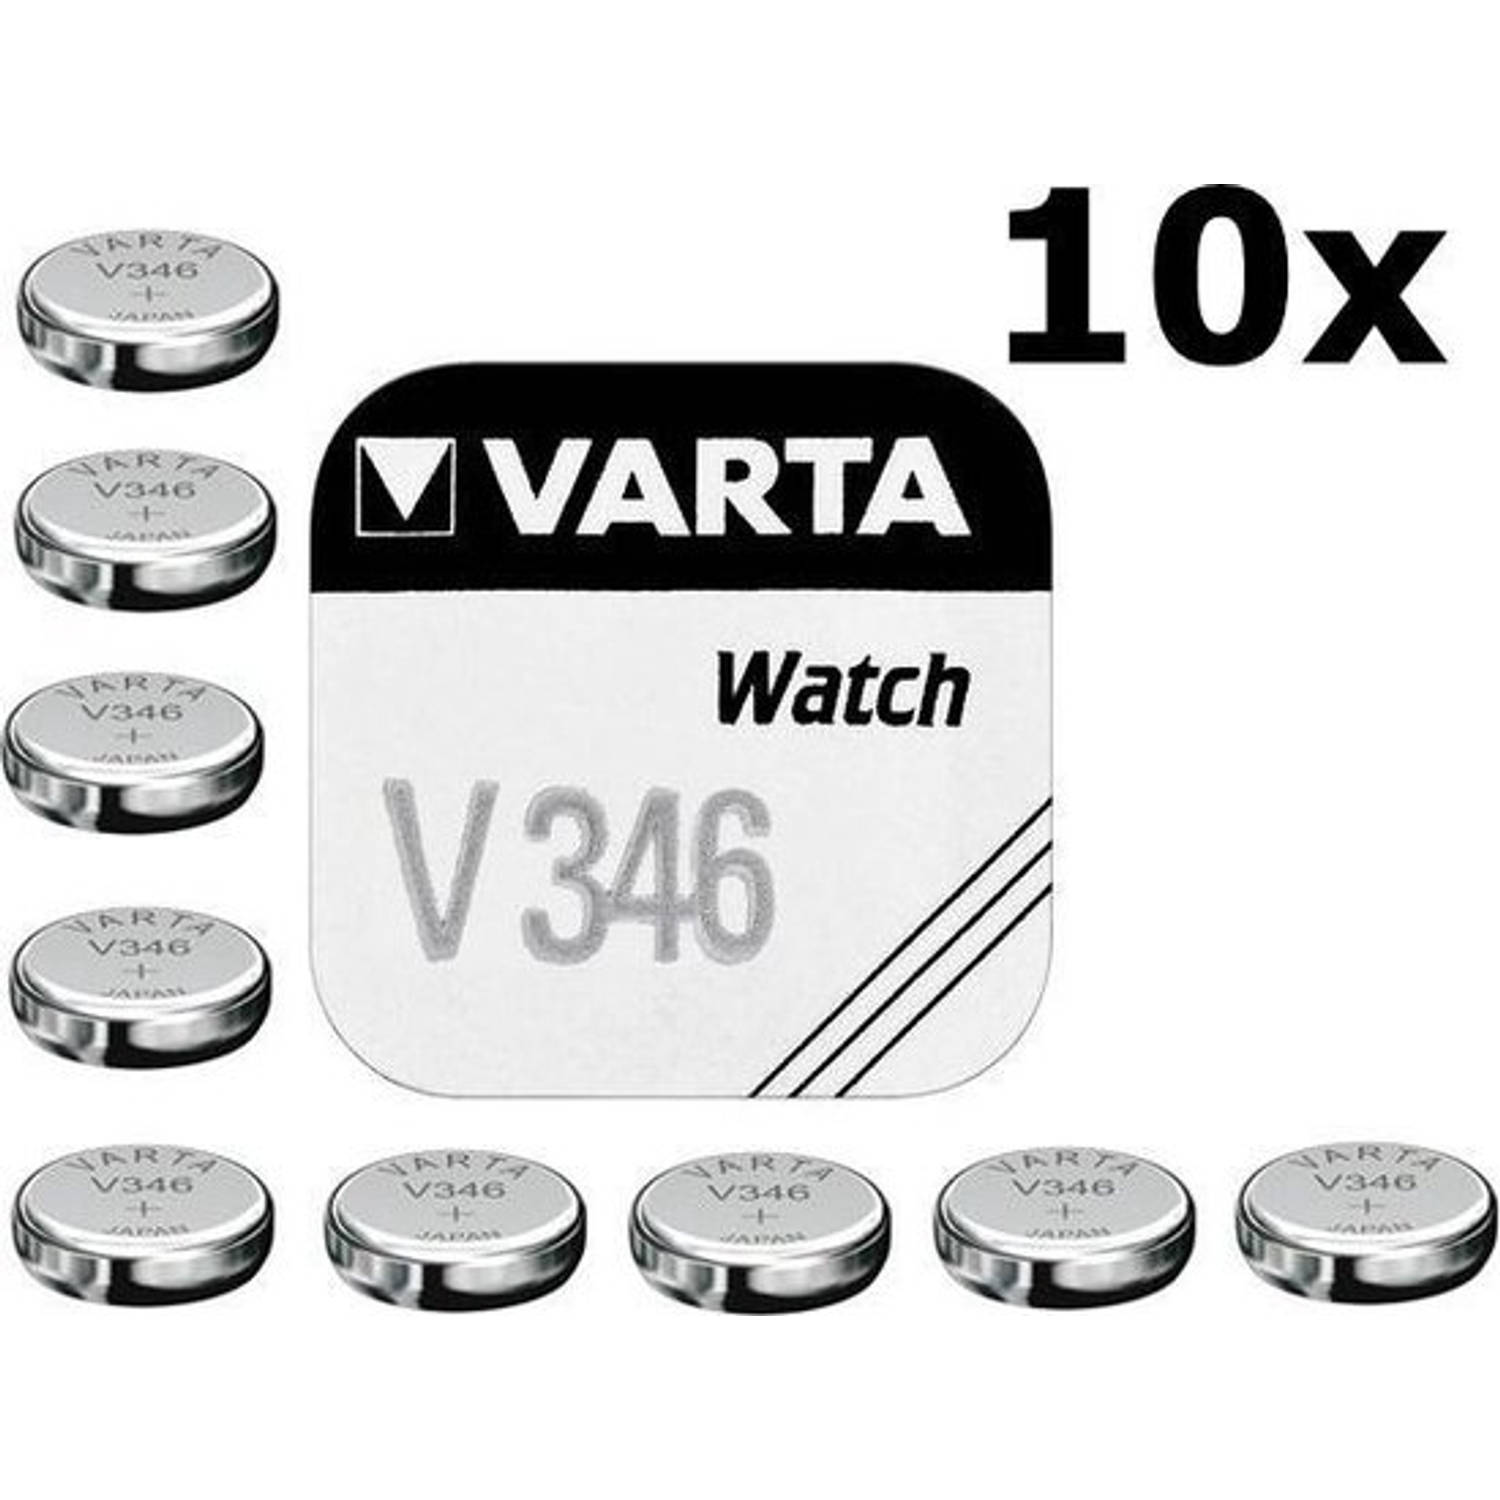 10 Stuks Varta V346 10mah 1.55v Knoopcel Batterij